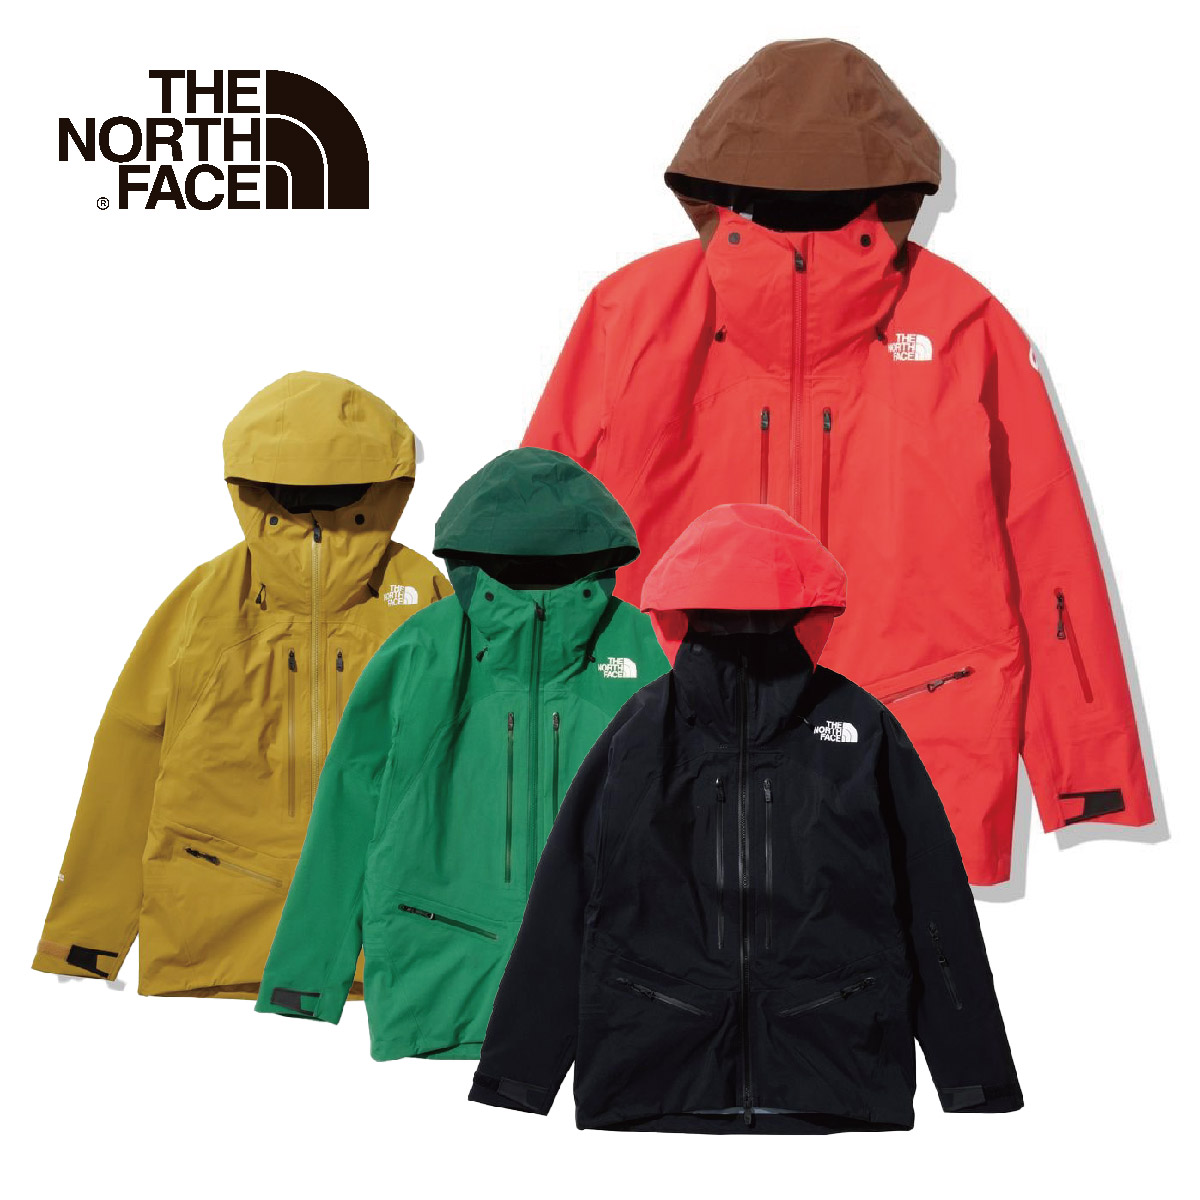 Ski Jackets & Ski Pants】THE NORTH FACE - Ski Shop - Japanese